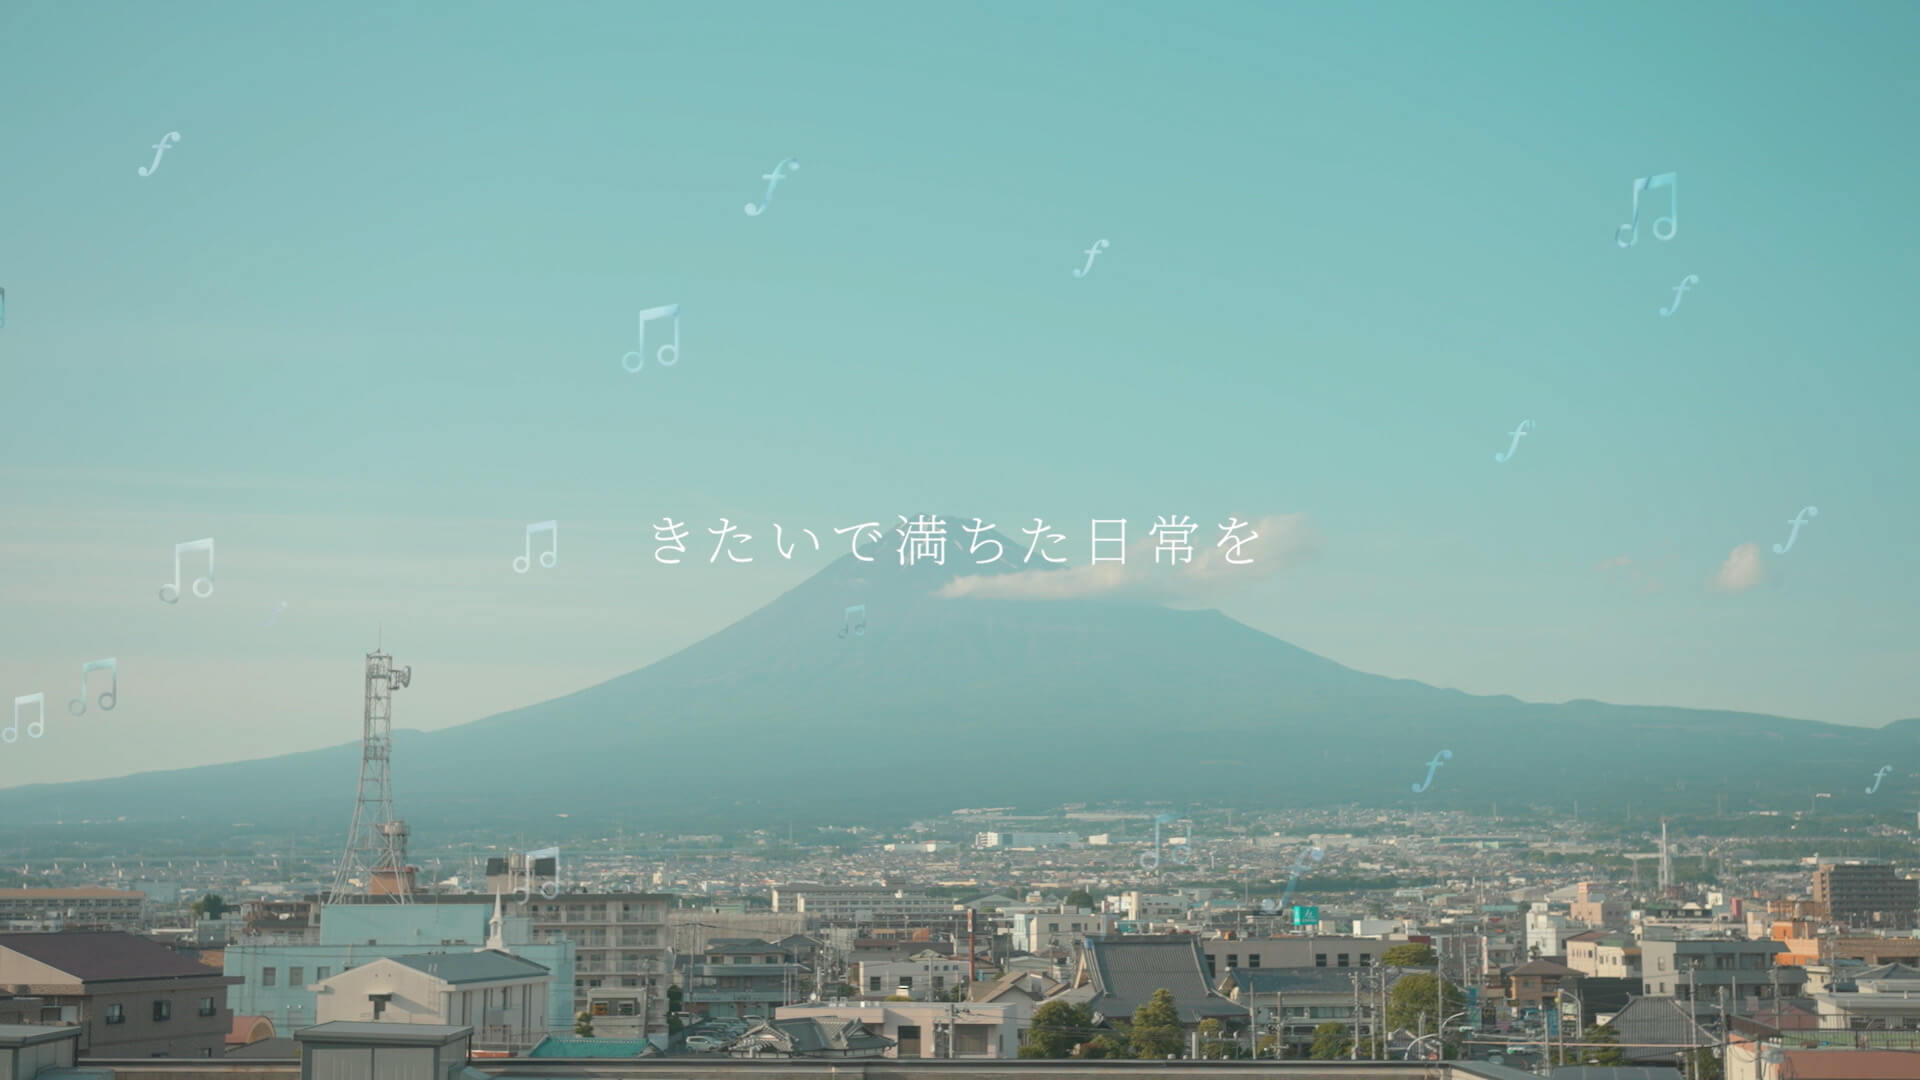 100周年で制作したプロミス映像のシーン3（富士山が象徴的な地域とともに）